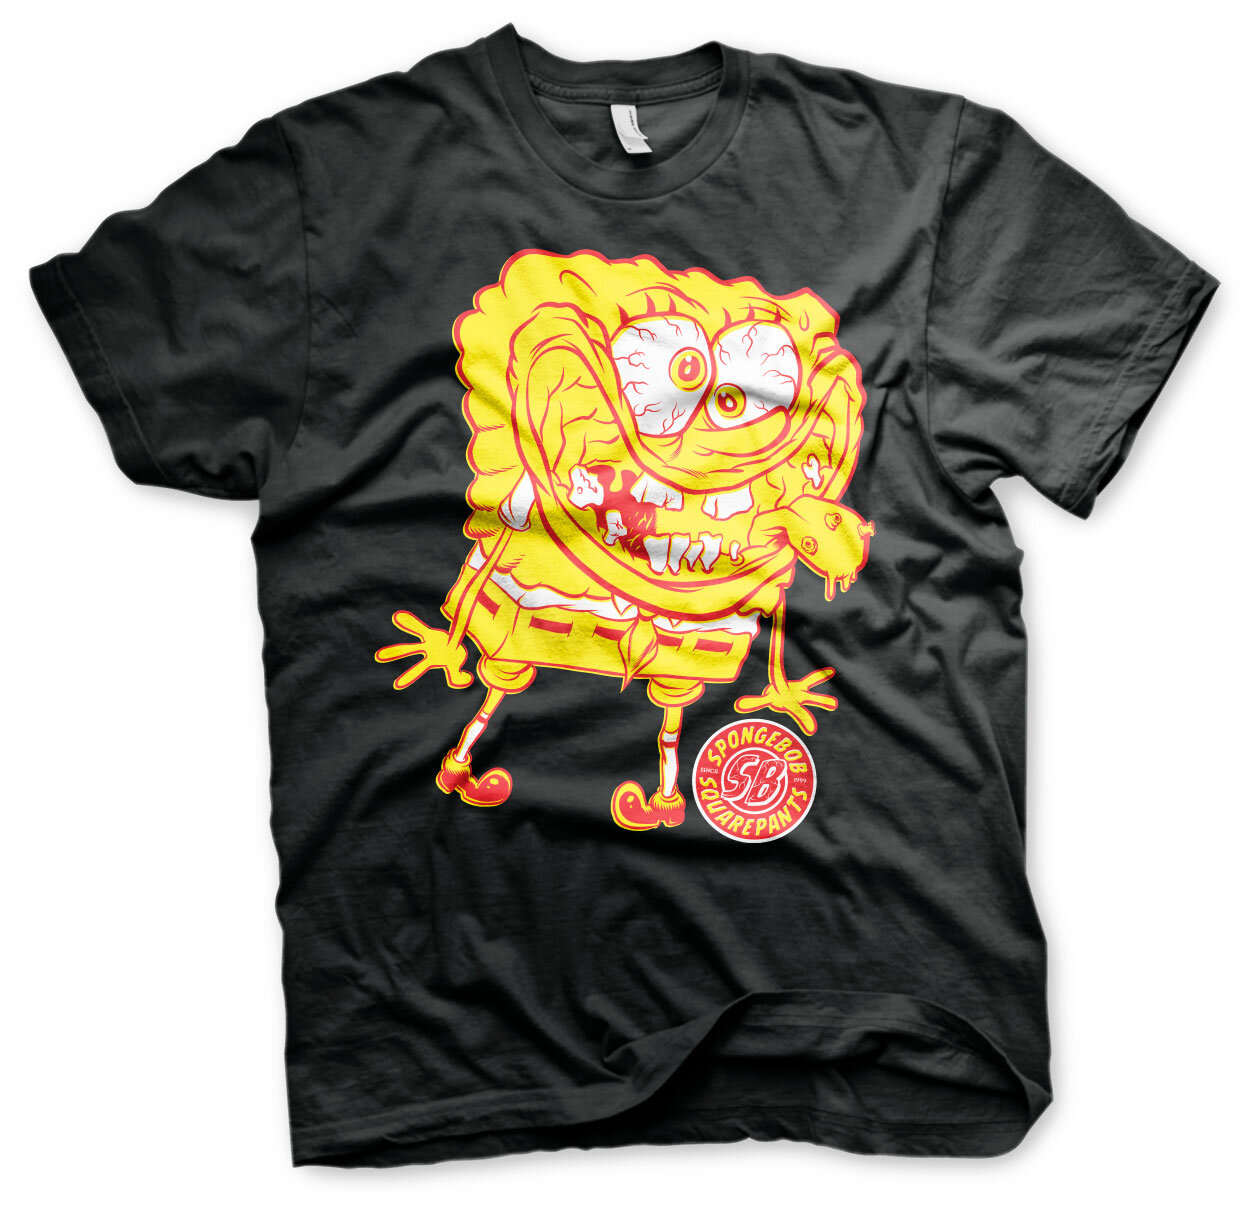 Spongebob Squarepants - Weird T-Shirt